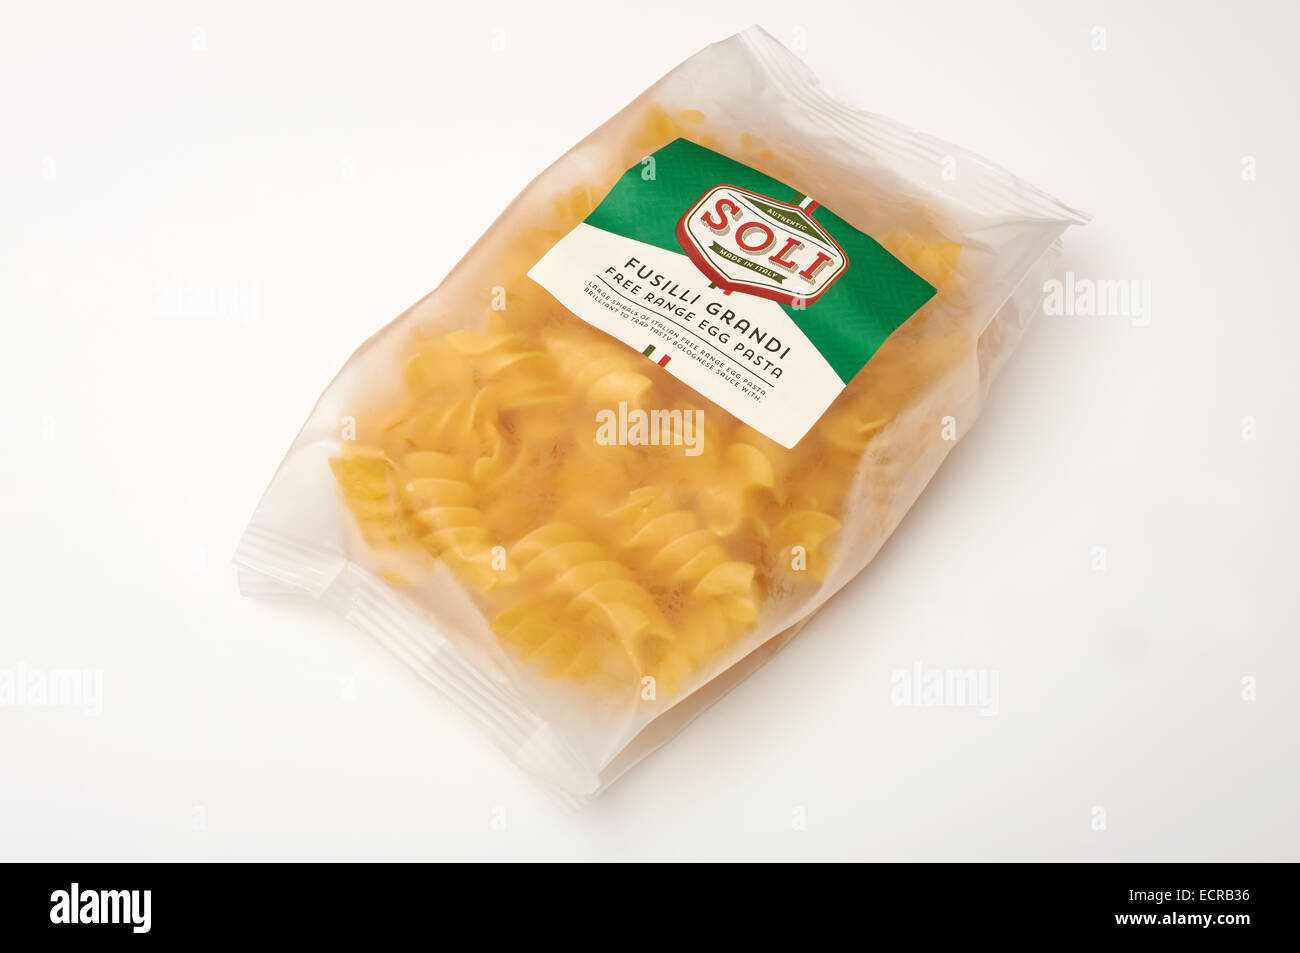 Soli Fusilli Grandi free range di pasta all'uovo Foto Stock